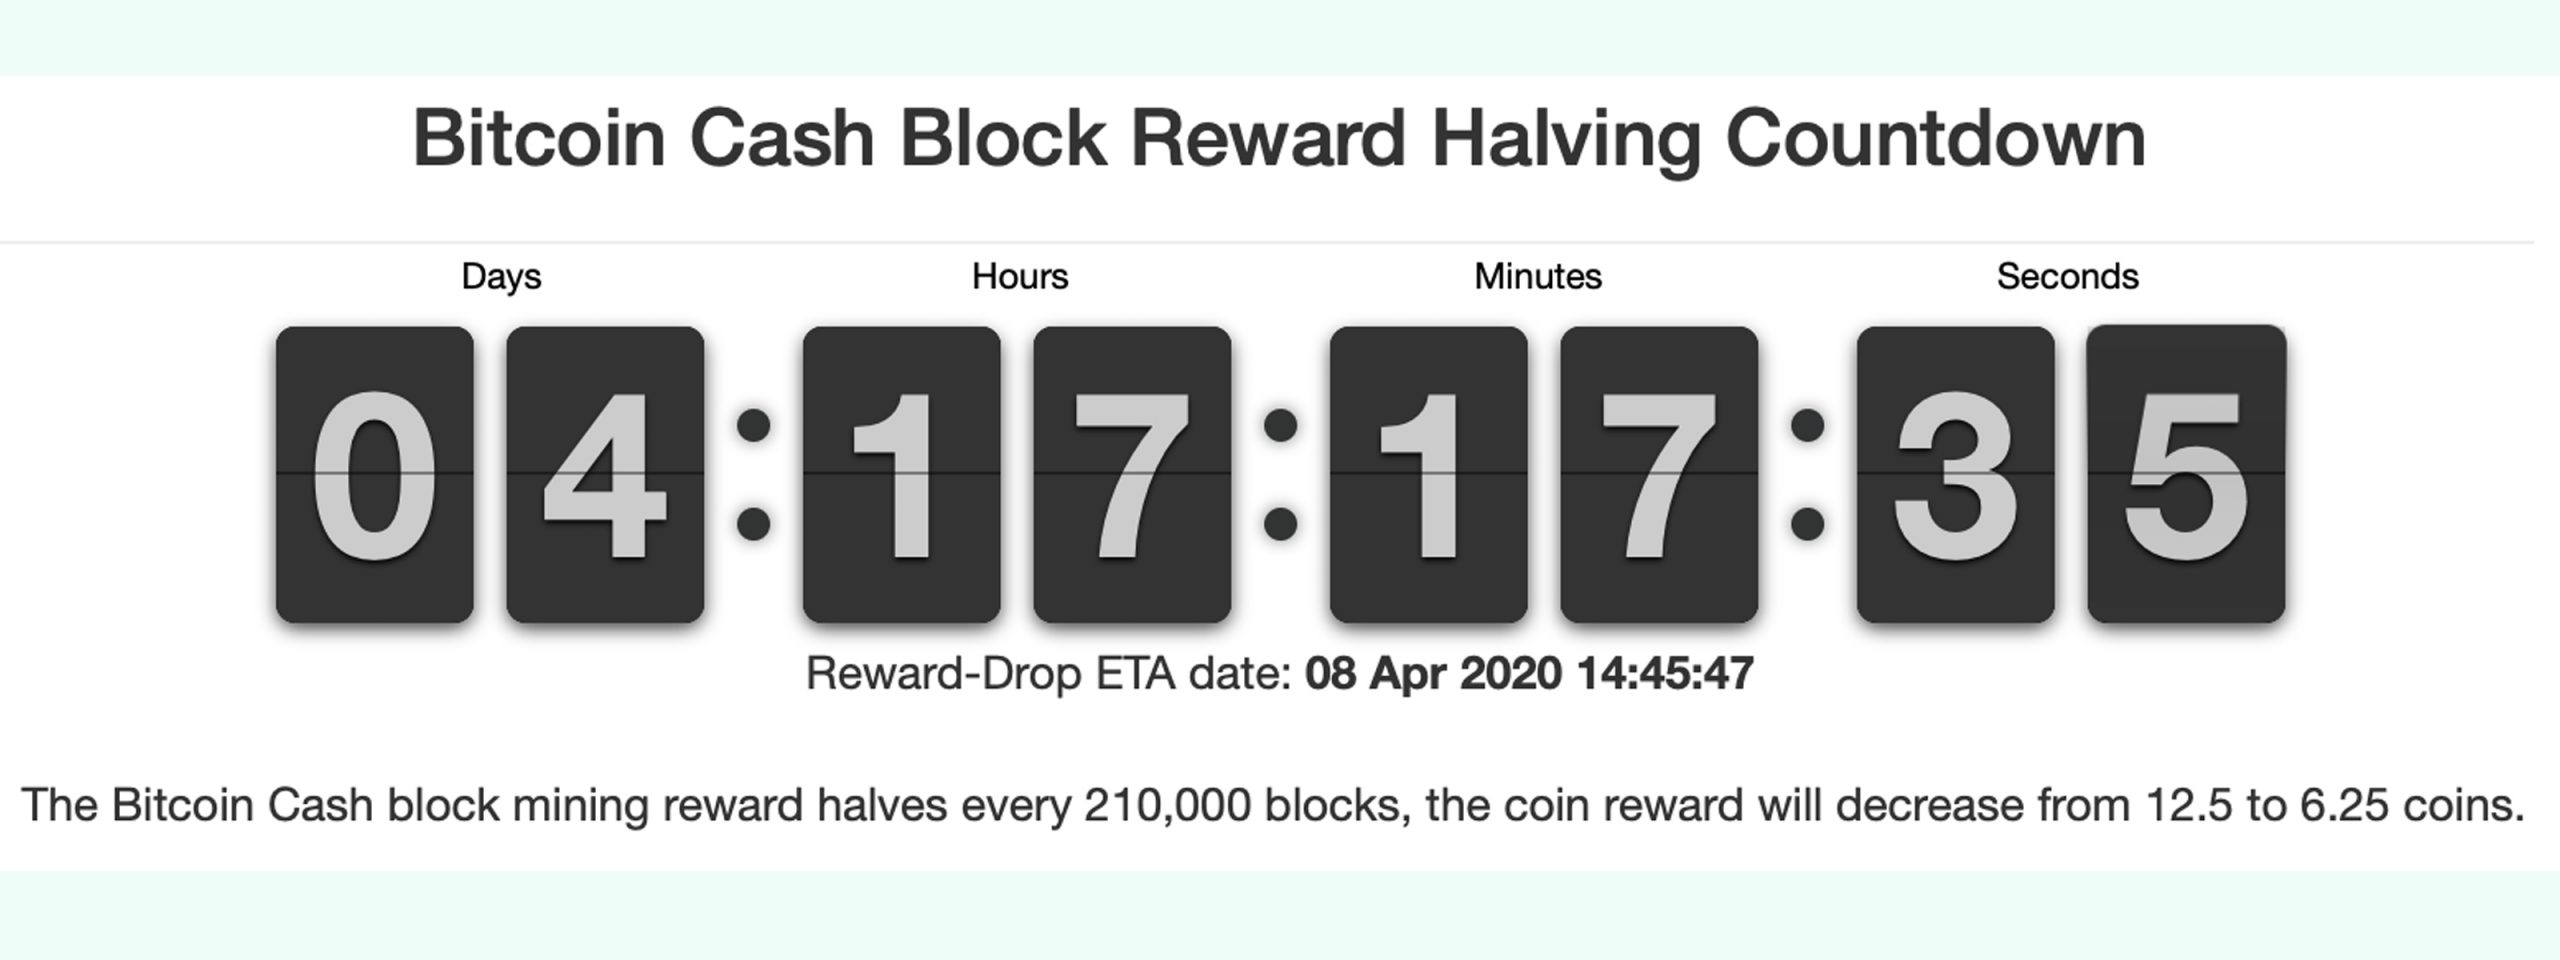 Nedräkningen av Bitcoin Cash Halvering - 50% mindre blockbelöning på fyra dagar